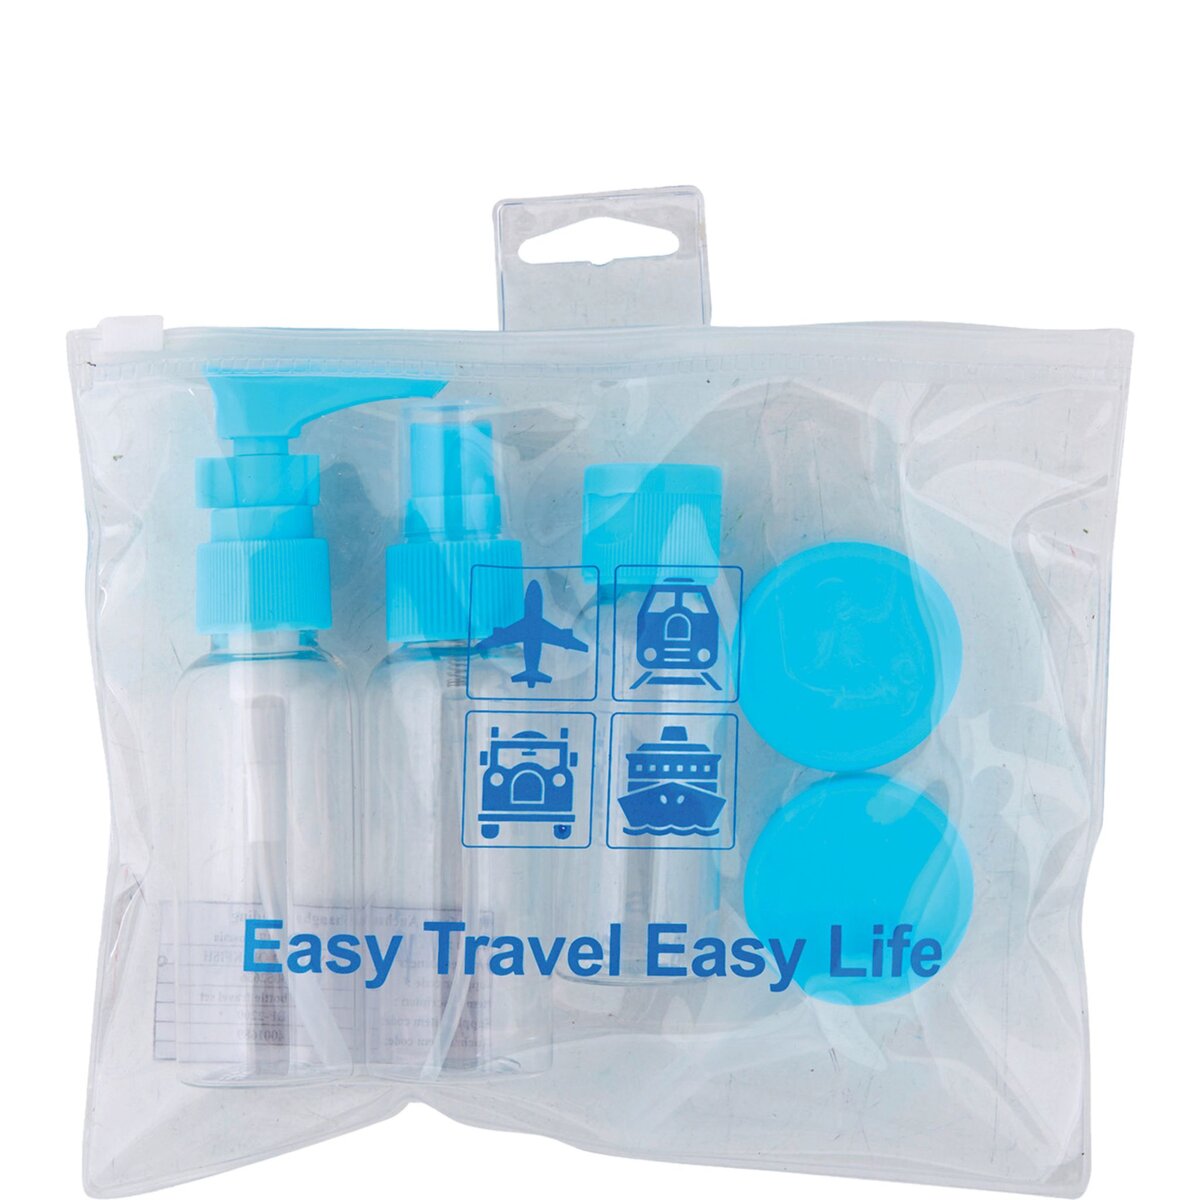 Acheter Kit de voyage avec flacons Bleu ? Bon et bon marché